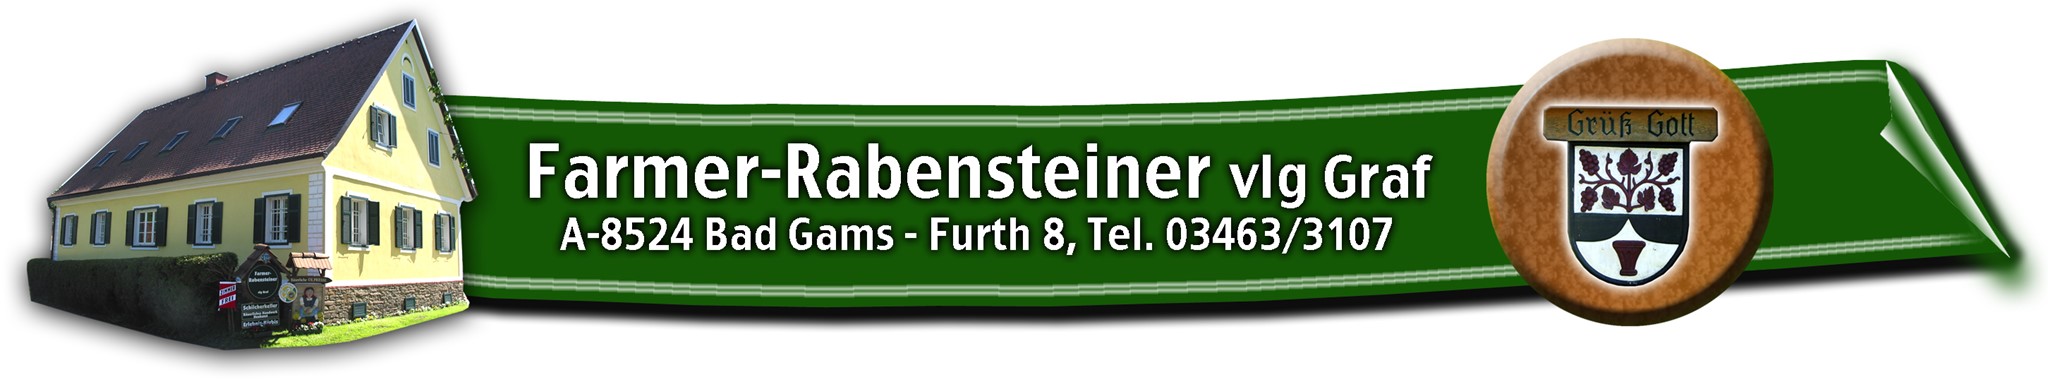 Farmer-Rabensteiner Online Shop